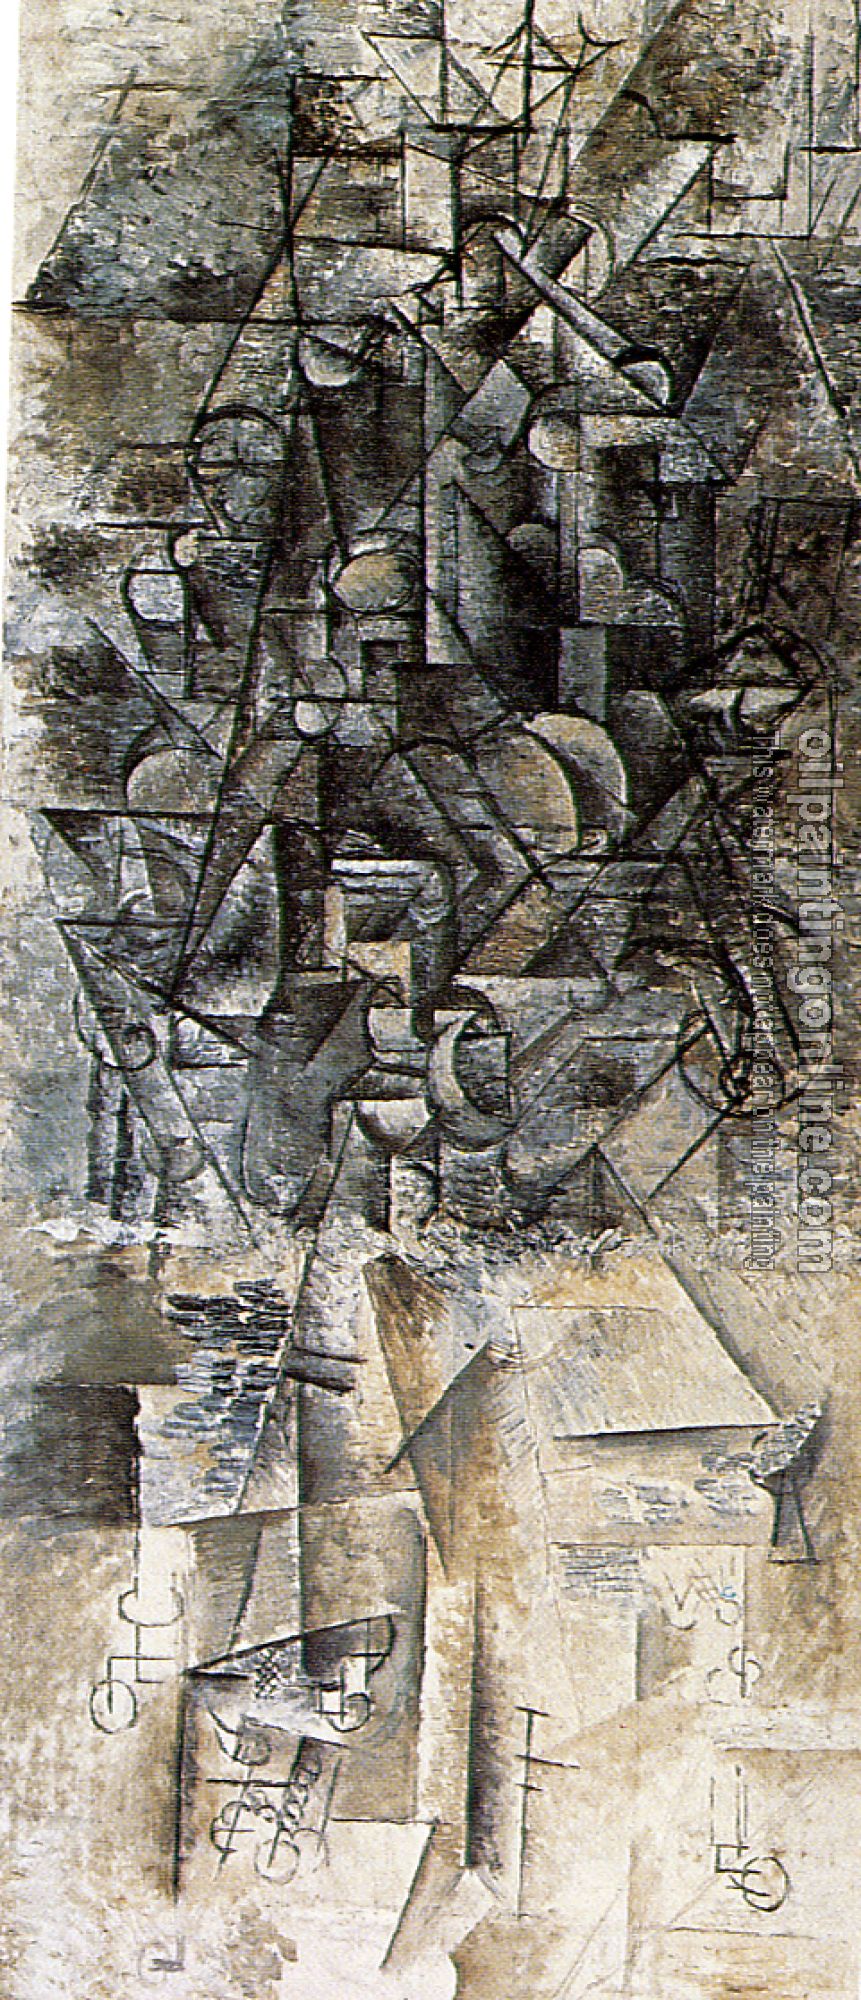 Picasso, Pablo - man with a mandolin